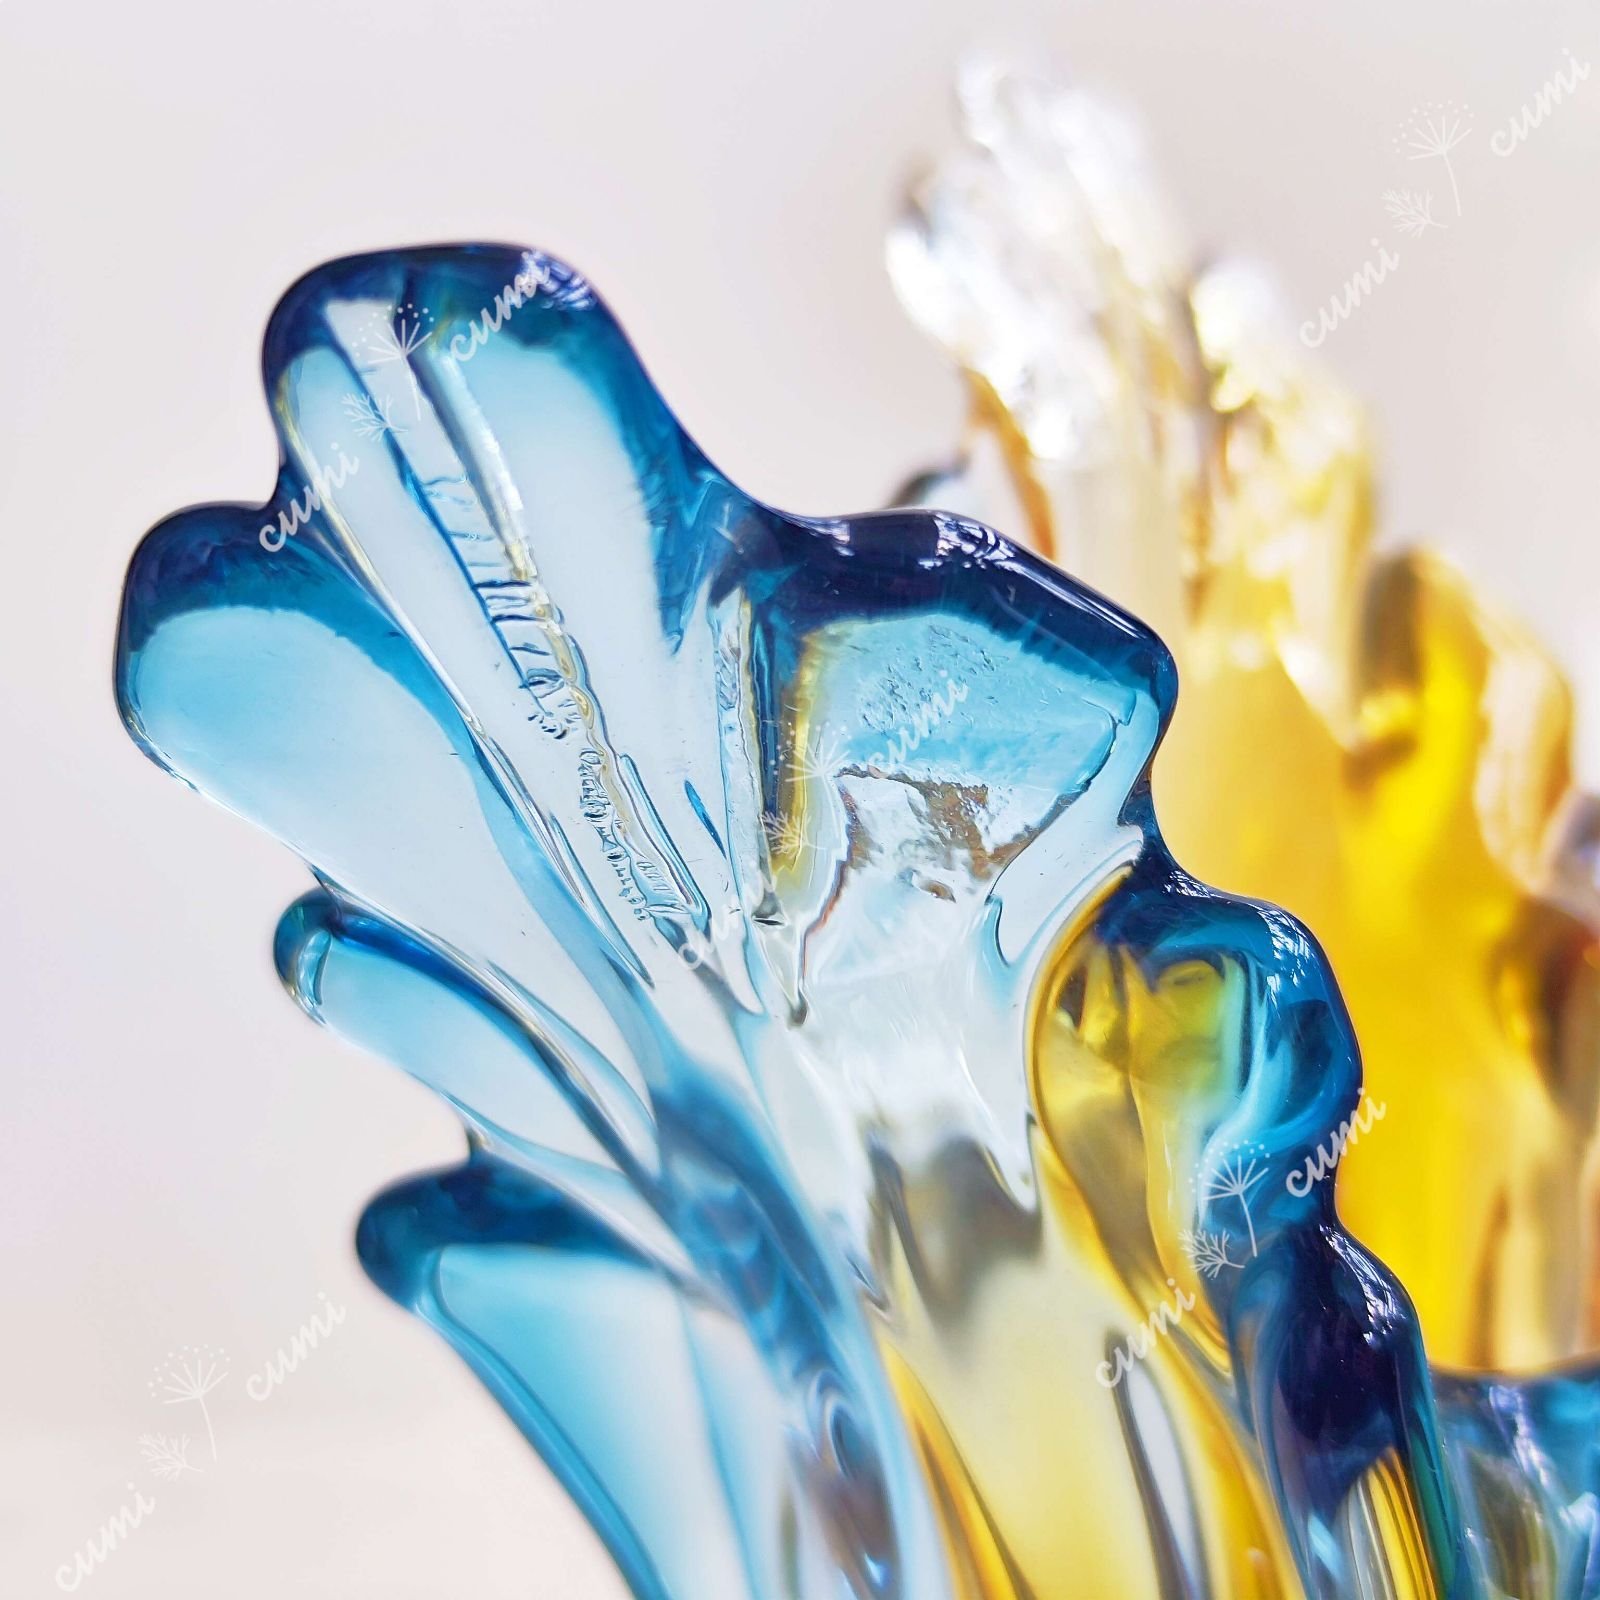 高品質 北欧 不規則 映え 黄色u0026青色 ガラス 花瓶 フラワーベース クリスタル インテリア おしゃれ 透明 クリア キラキラ 限定 一輪挿し 高級  おしゃれ 室内 激安 レア プレゼント 海外 おすすめ 人気 デザイン 観葉植物